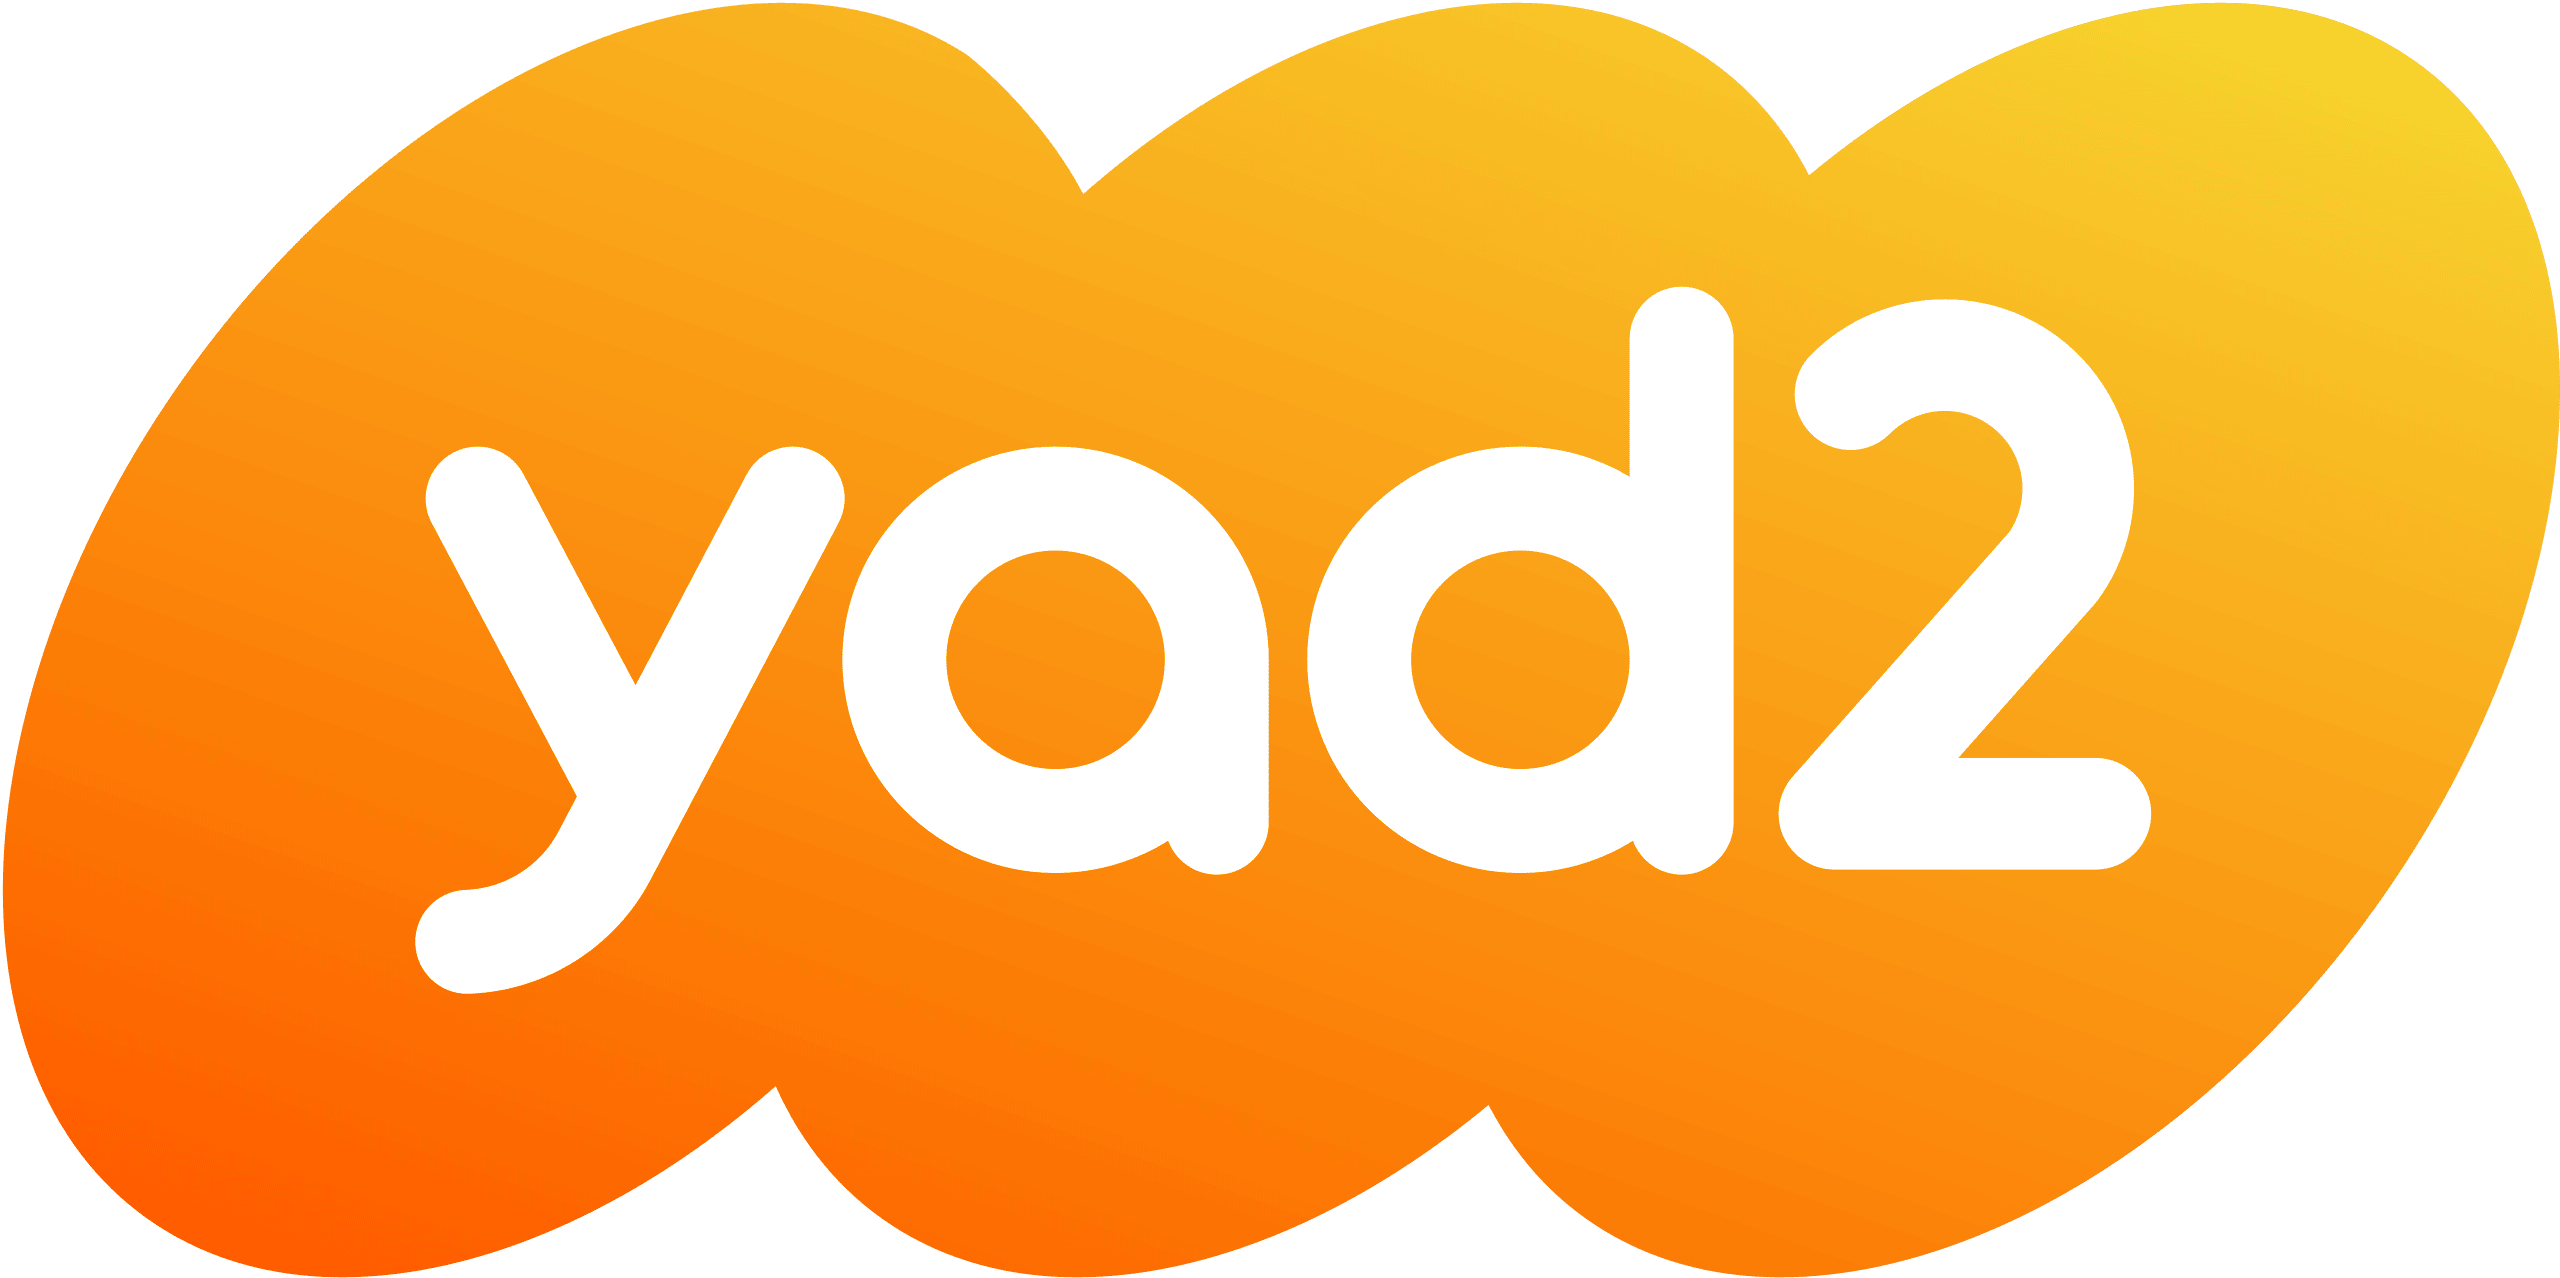 yad2 logo